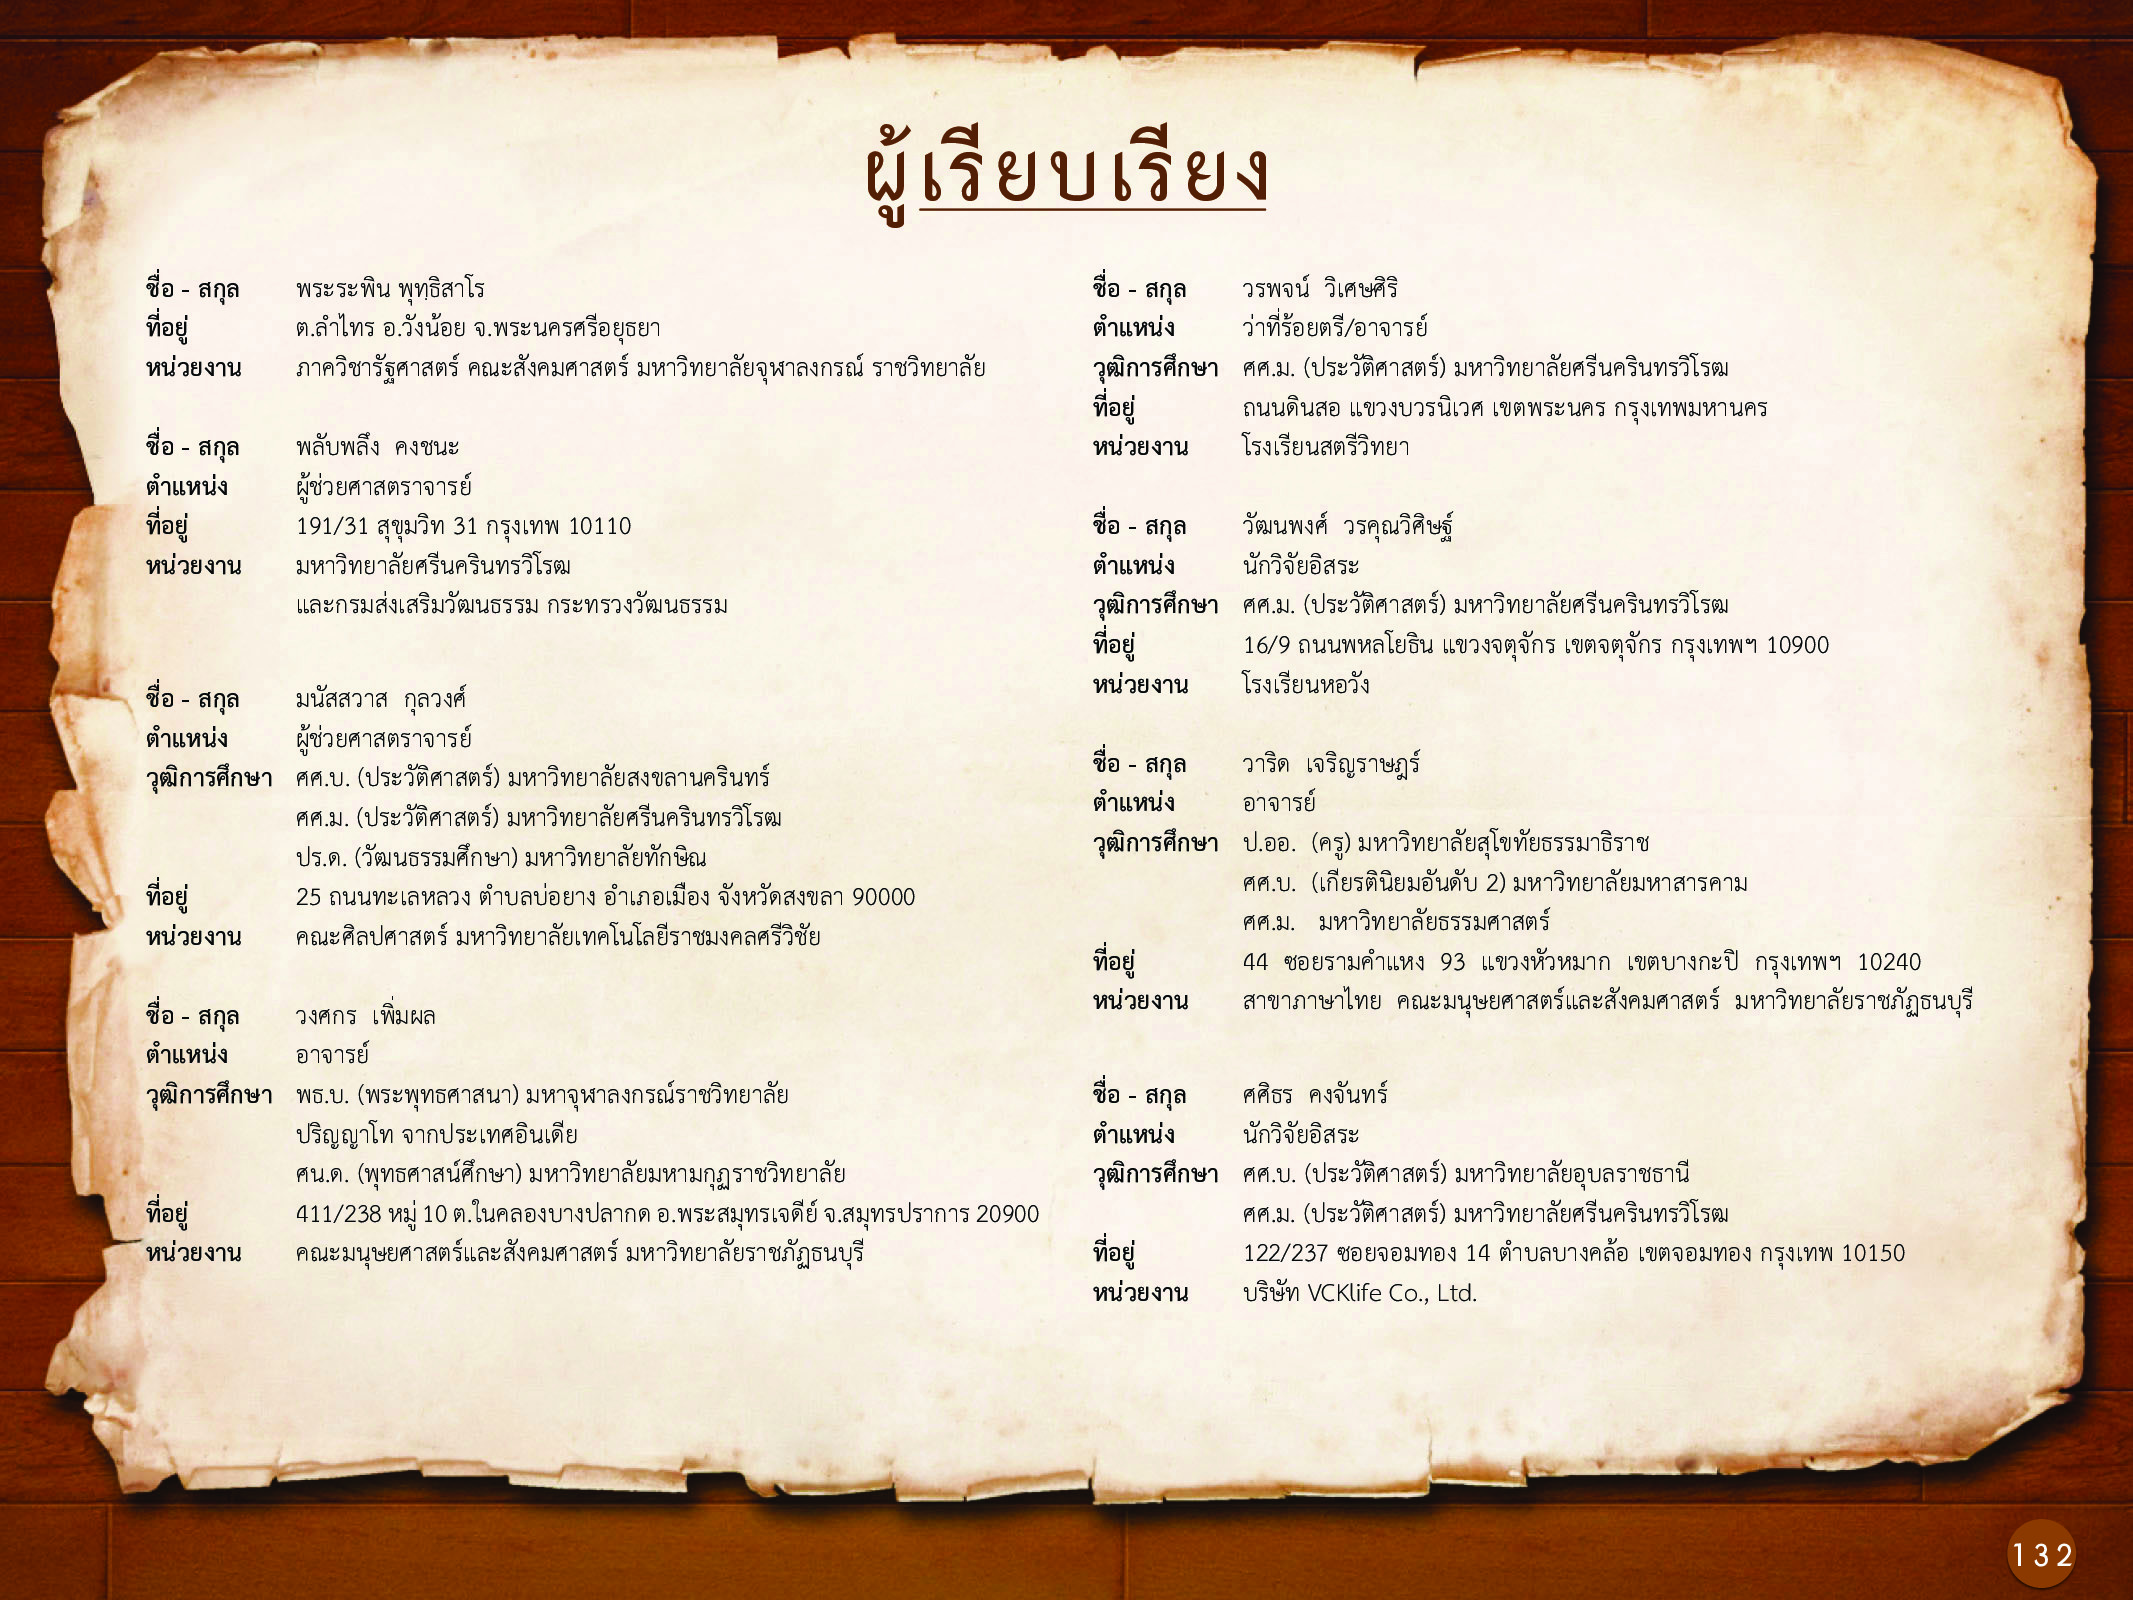 ประวัติศาสตร์กรุงธนบุรี ./images/history_dhonburi/132.jpg